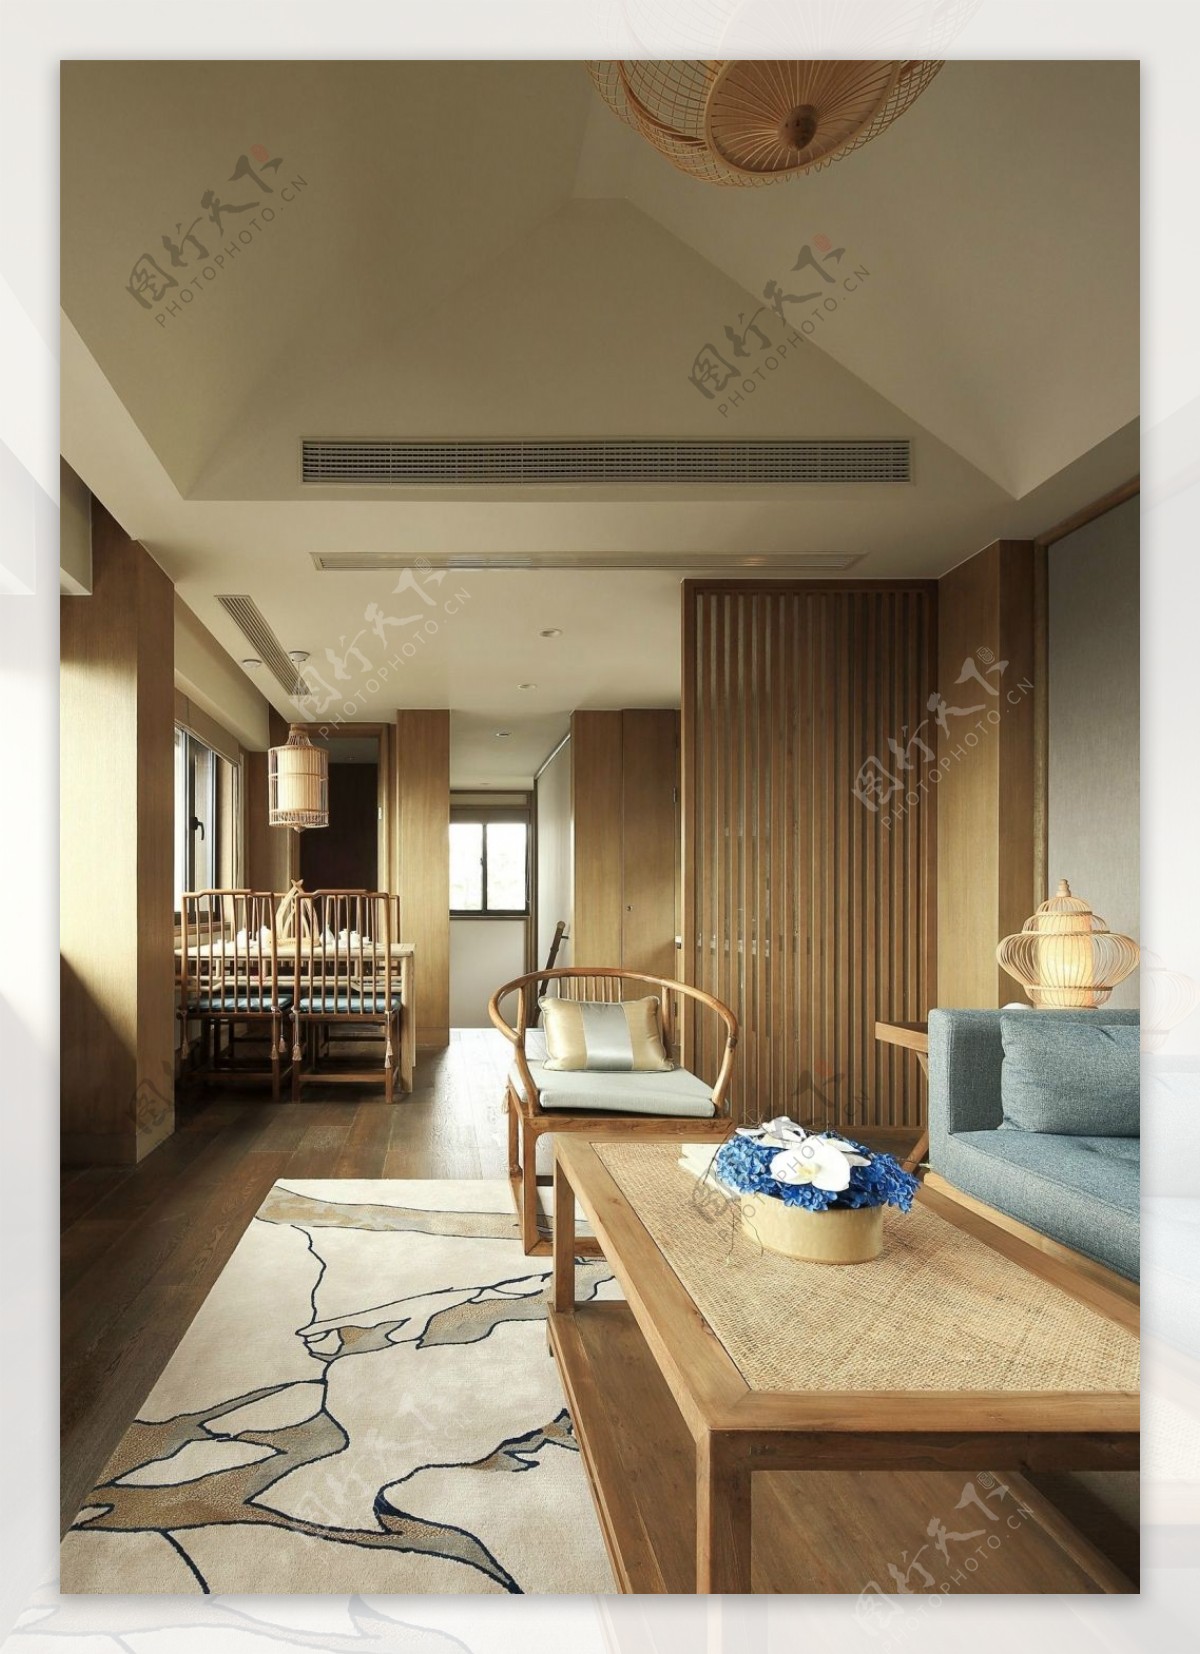 日式风室内设计客厅隔断效果图JPG源文件